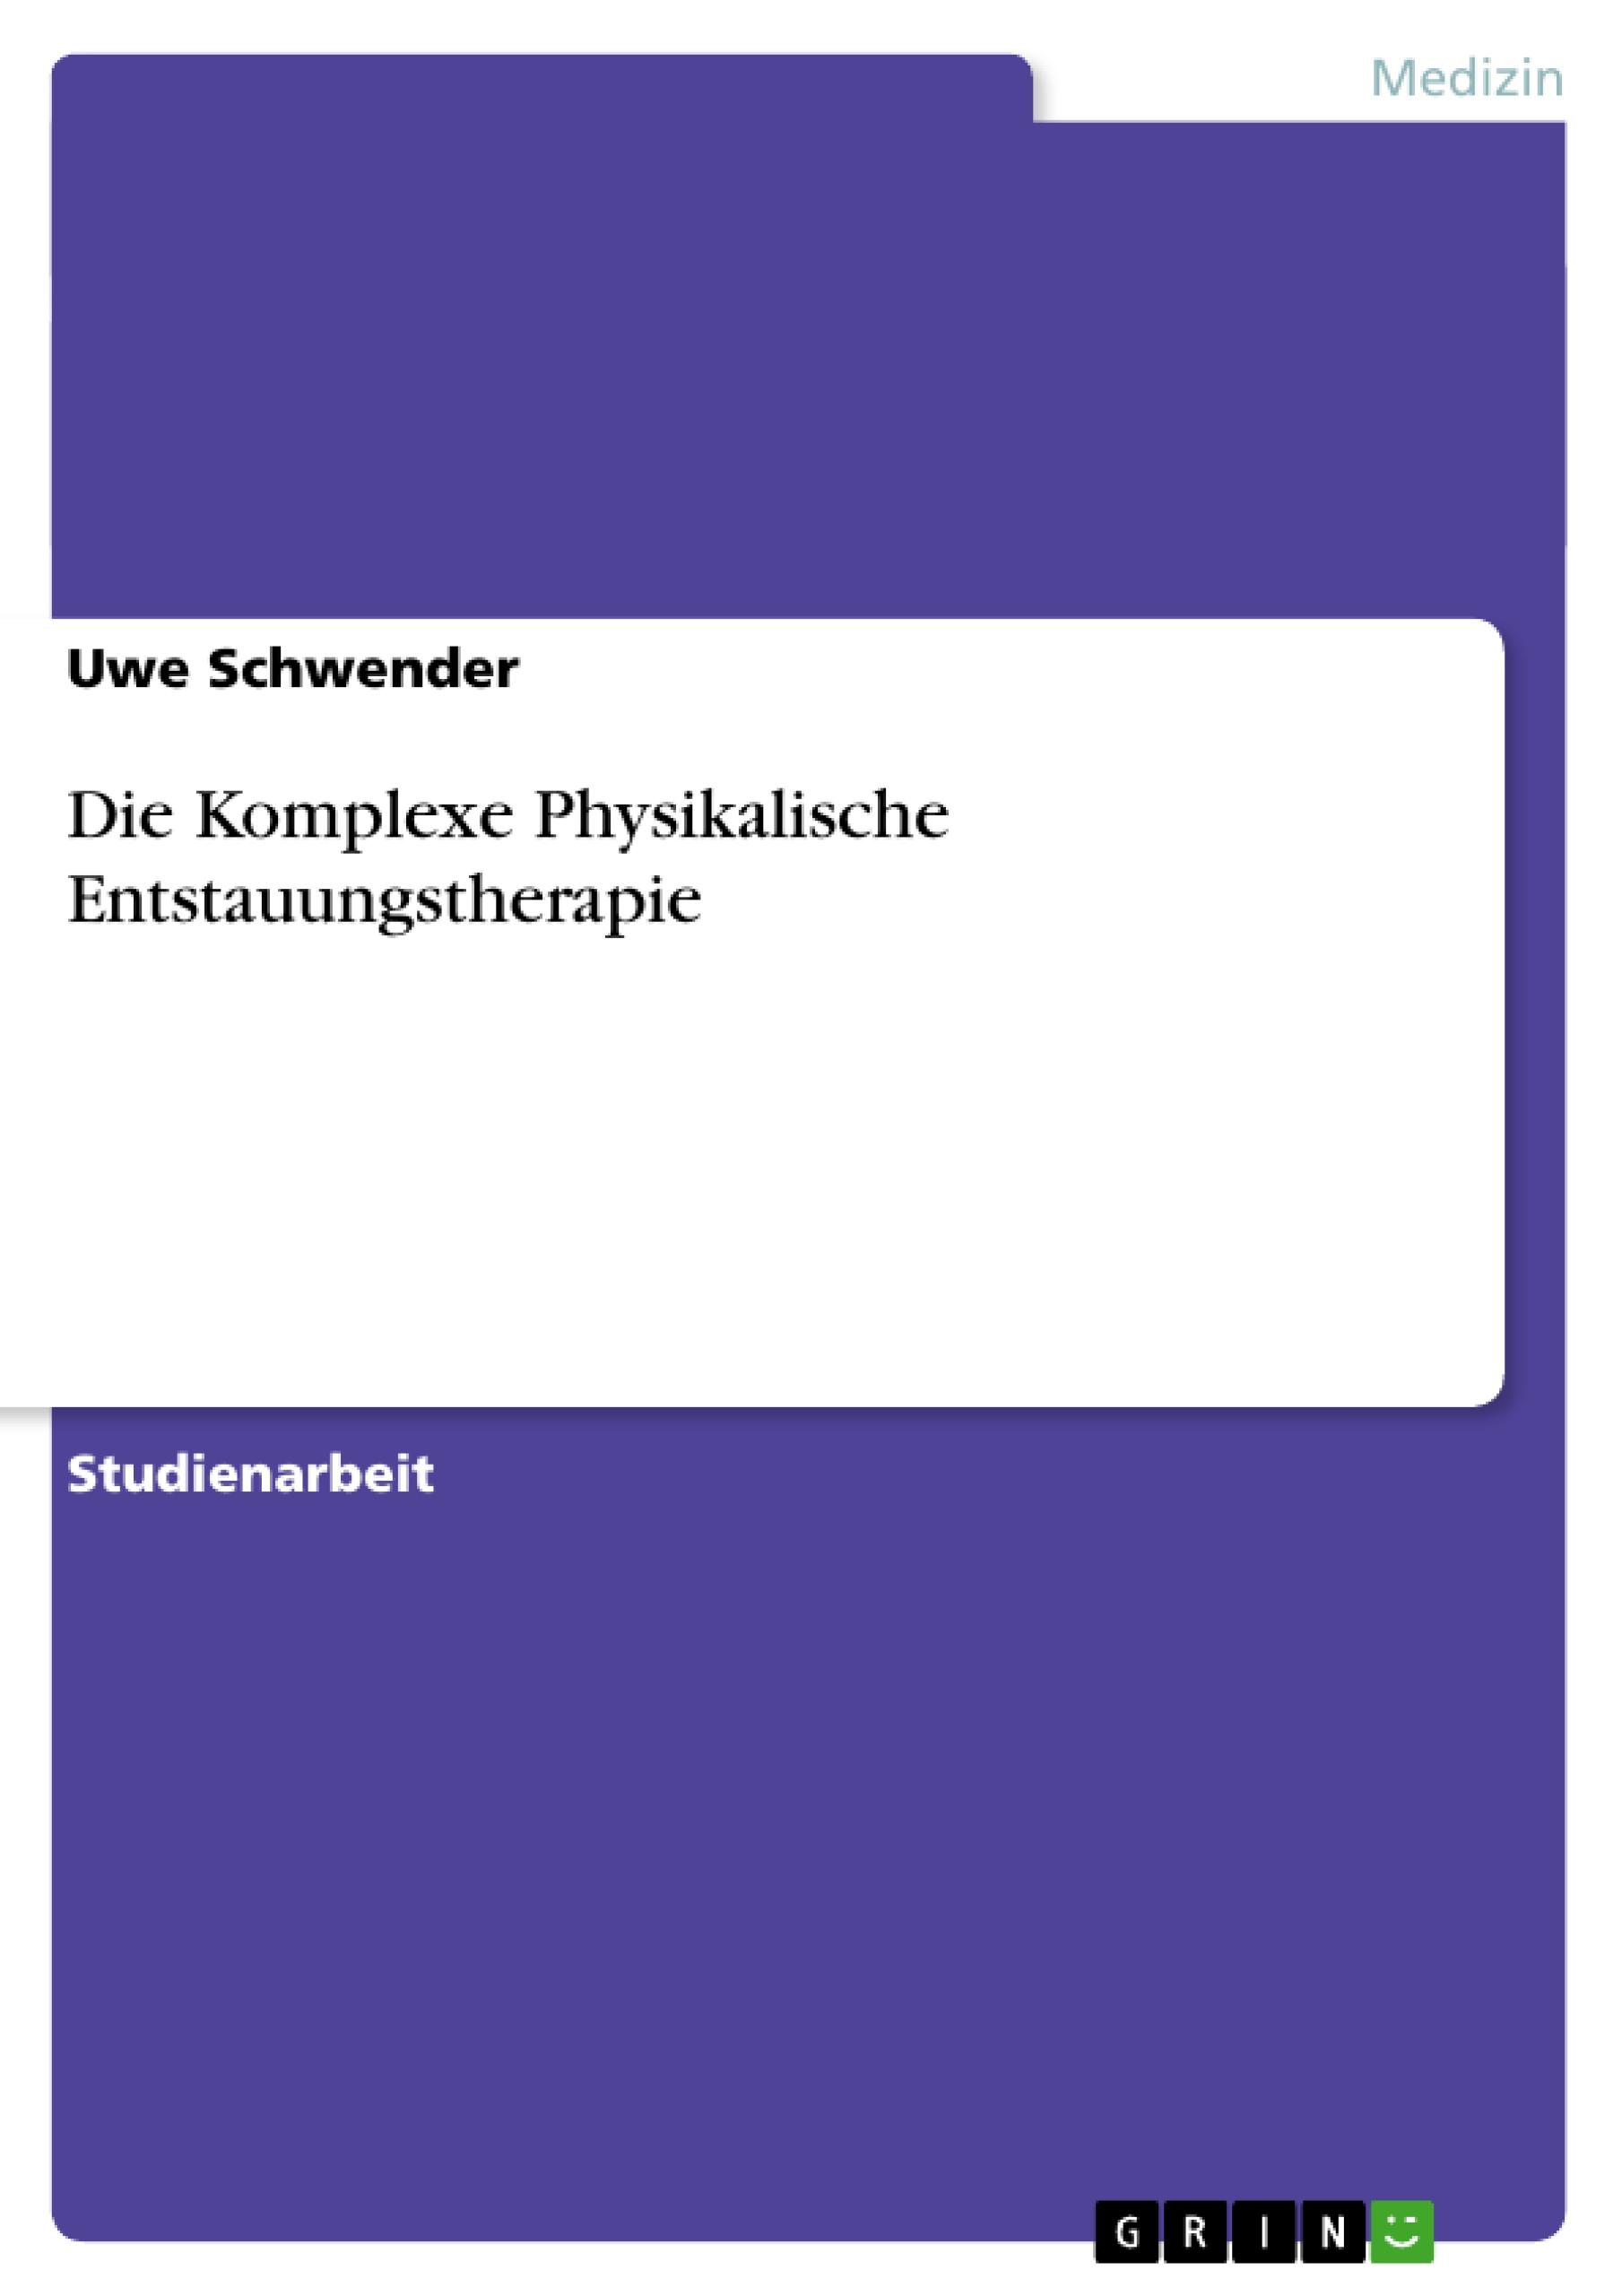 Die Komplexe Physikalische Entstauungstherapie / Uwe Schwender / Taschenbuch / Paperback / 32 S. / Deutsch / 2007 / GRIN Verlag / EAN 9783638646918 - Schwender, Uwe